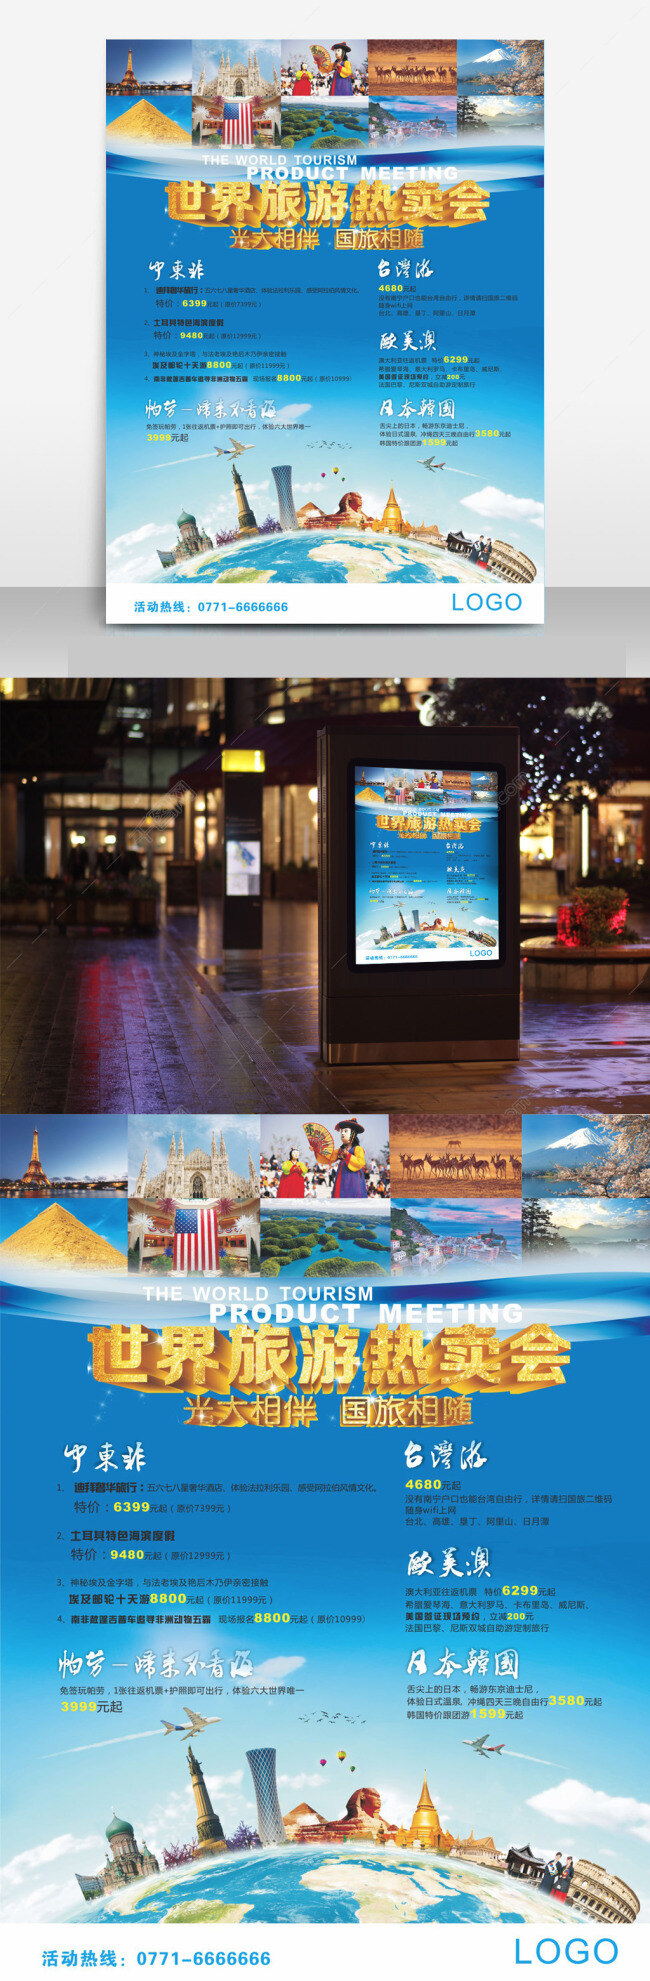 世界 旅游 热卖 会 海报 世界旅游 热卖会 景点 路线 蓝色 建筑地标